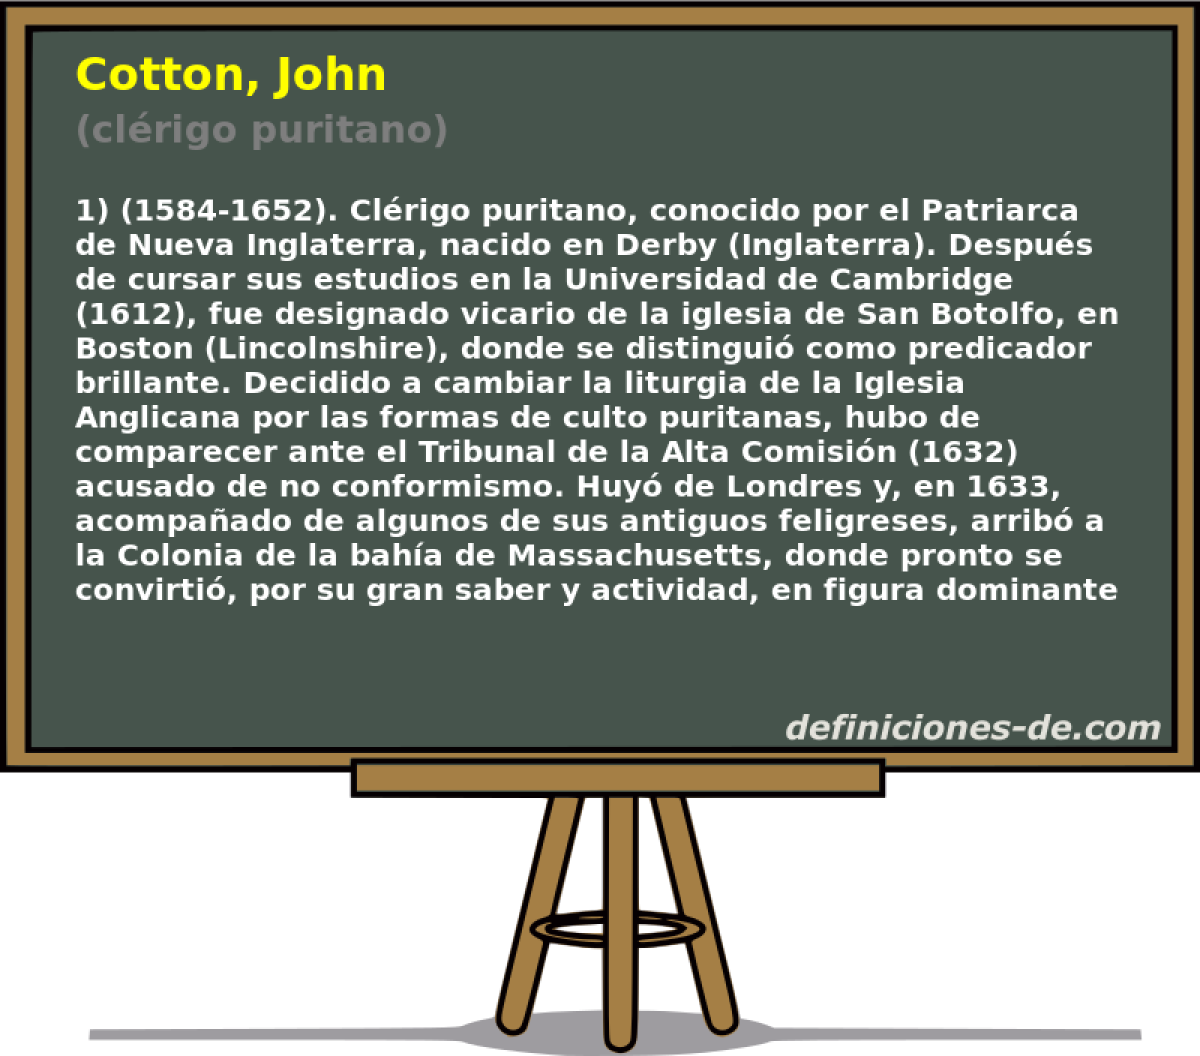 Cotton, John (clrigo puritano)